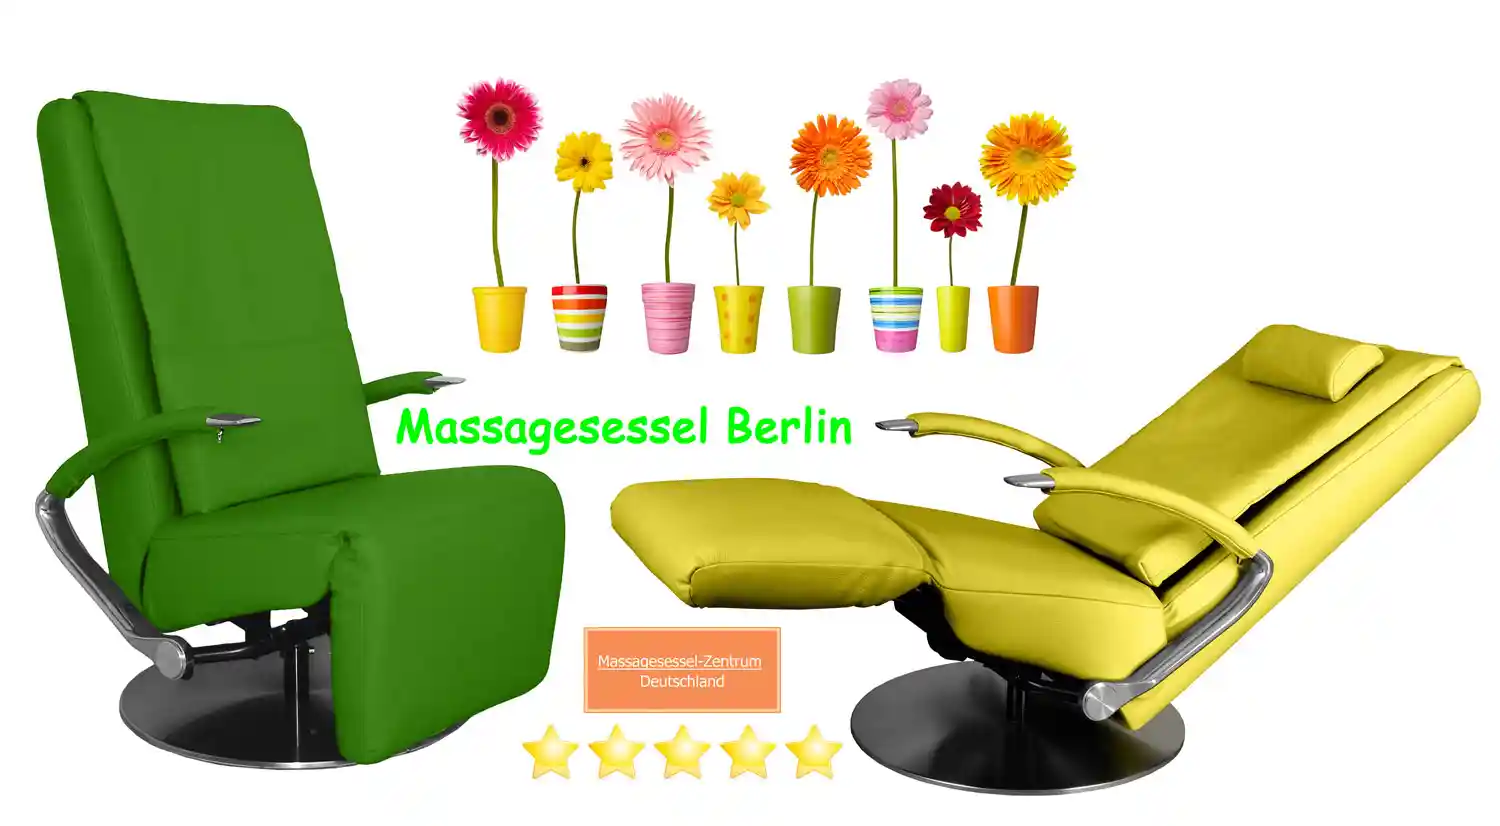 Massagesessel Berlin